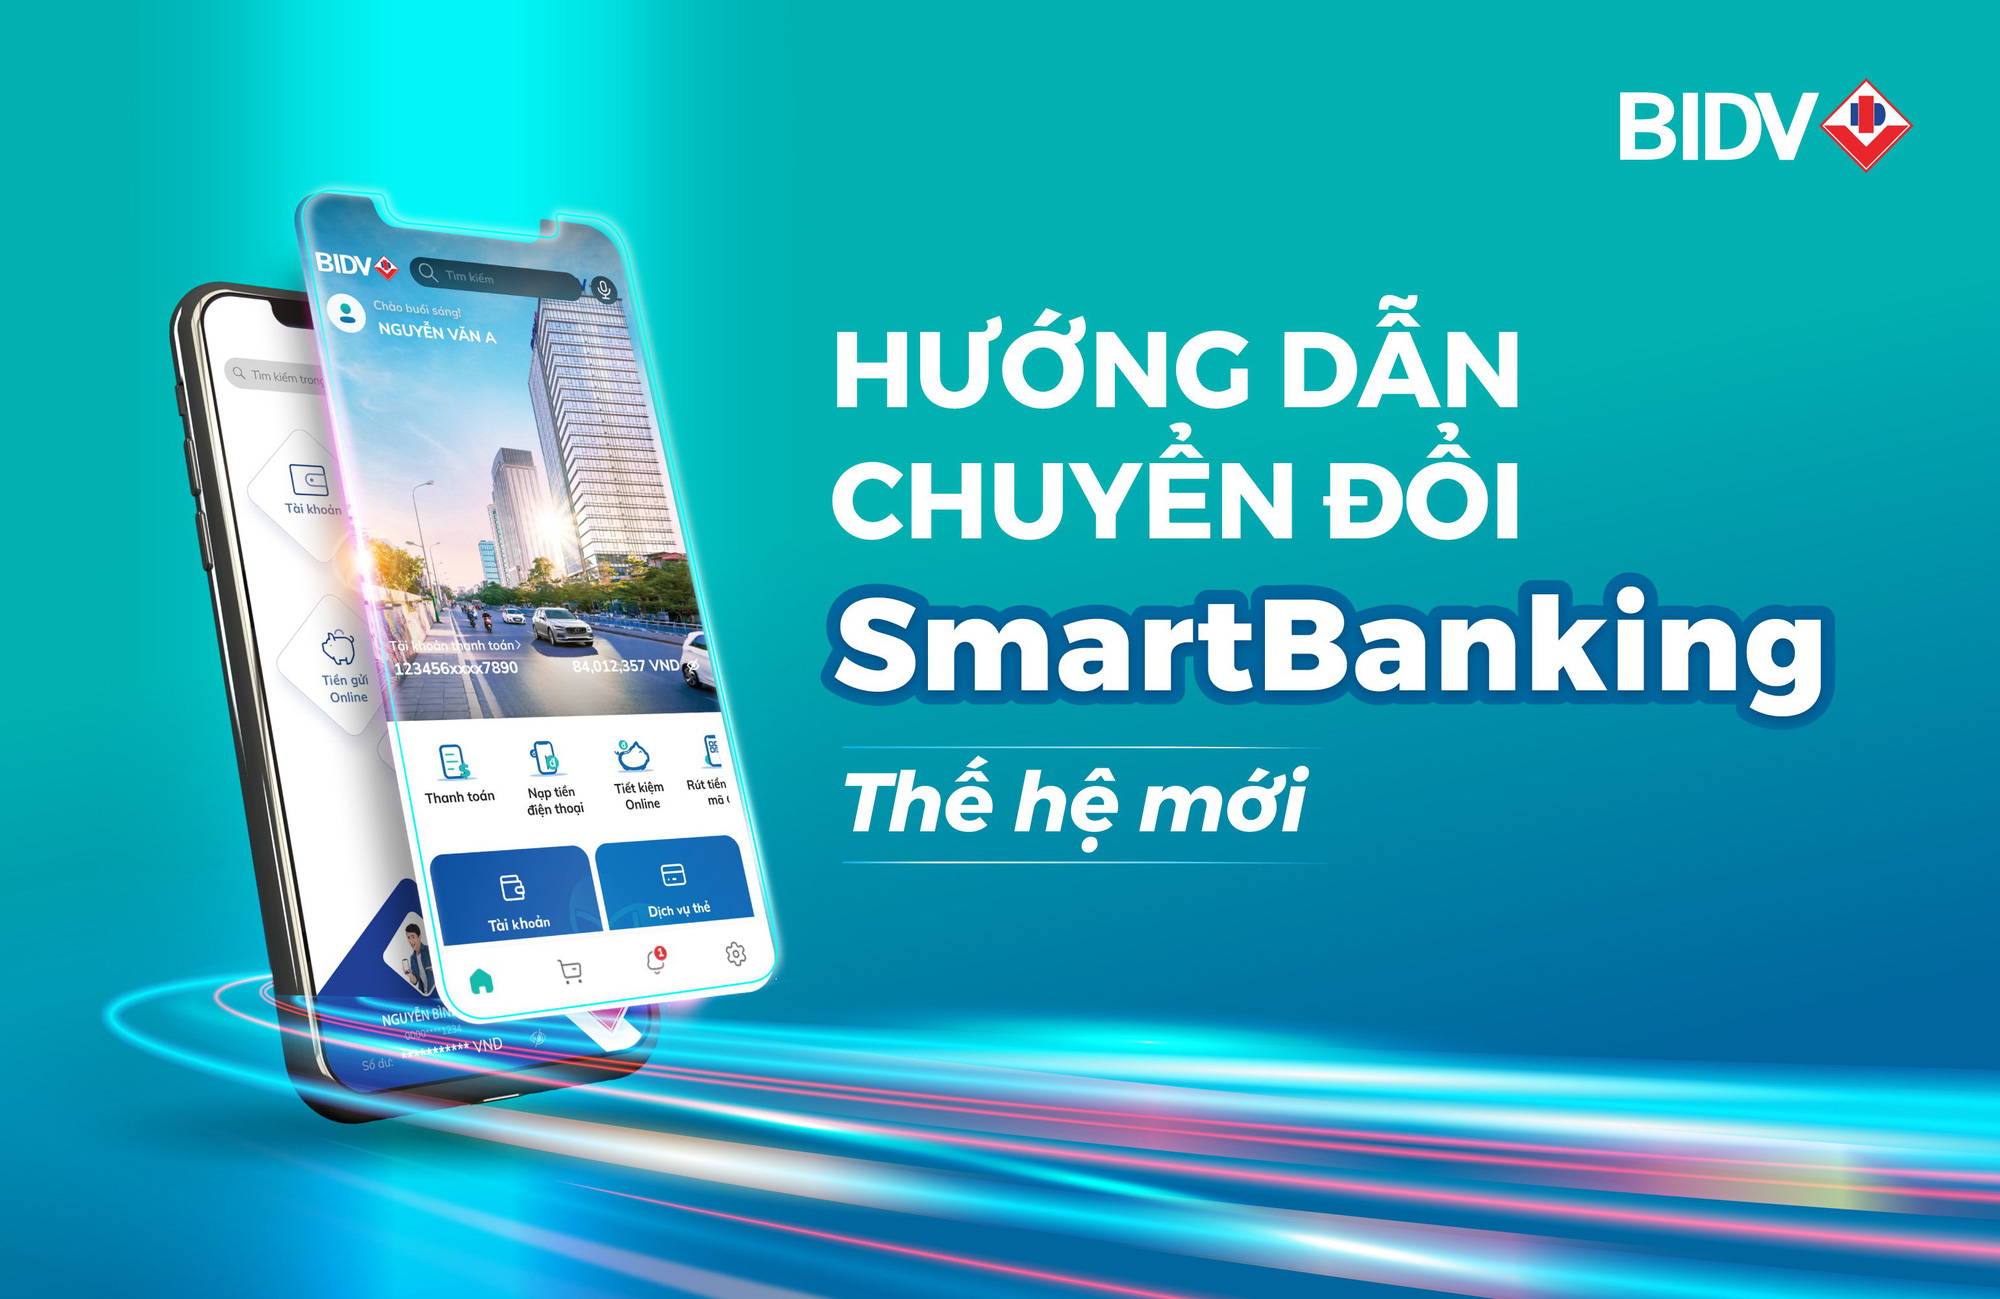 BIDV sắp ra mắt dịch vụ SmartBanking thế hệ mới - Ảnh 2.